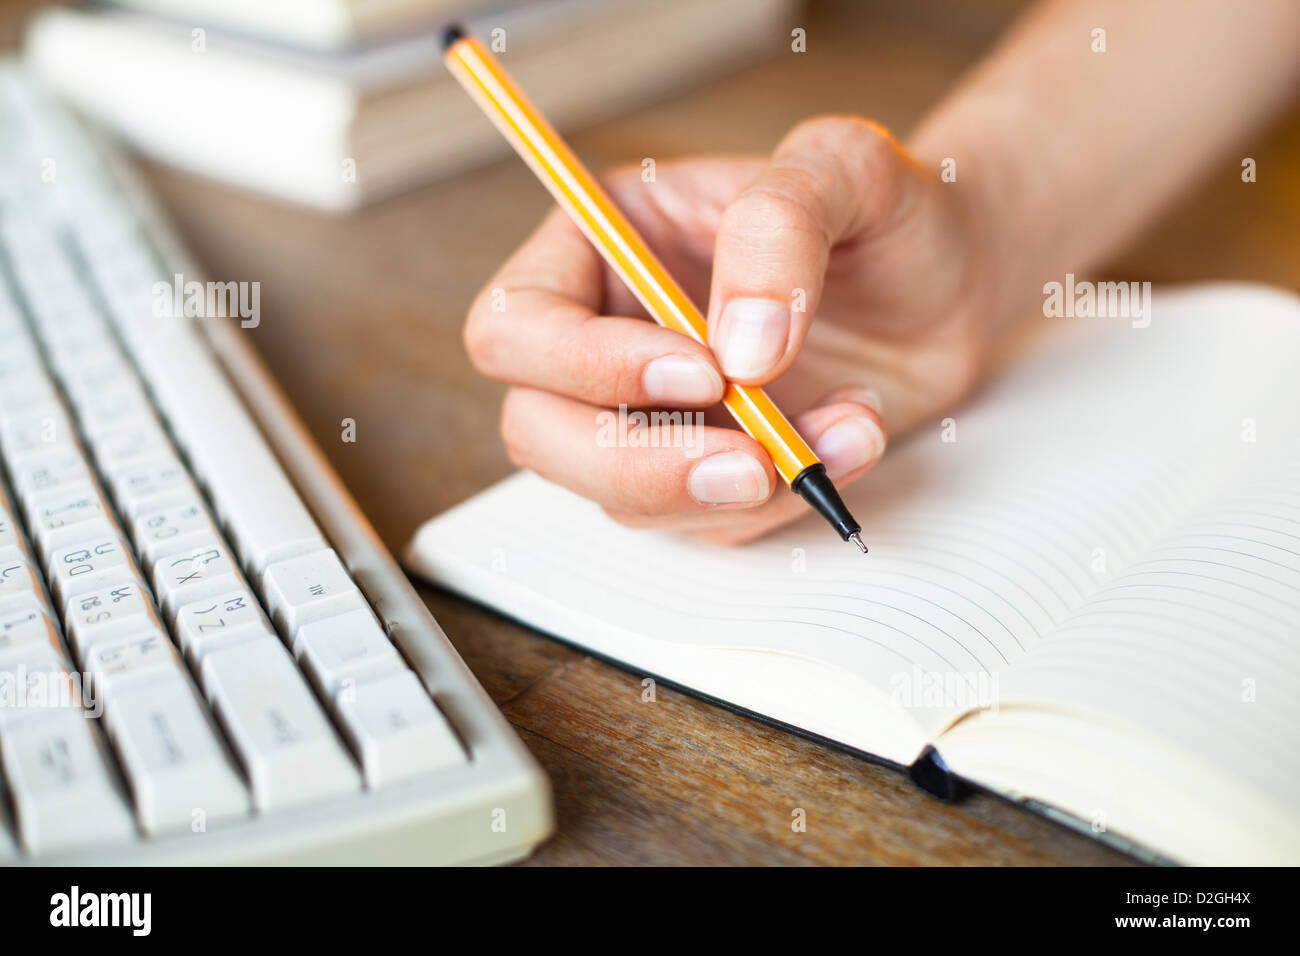 Händen schreibt einen Stift in einem Notebook, Tastatur, einen Stapel Bücher im Hintergrund. Stockfoto